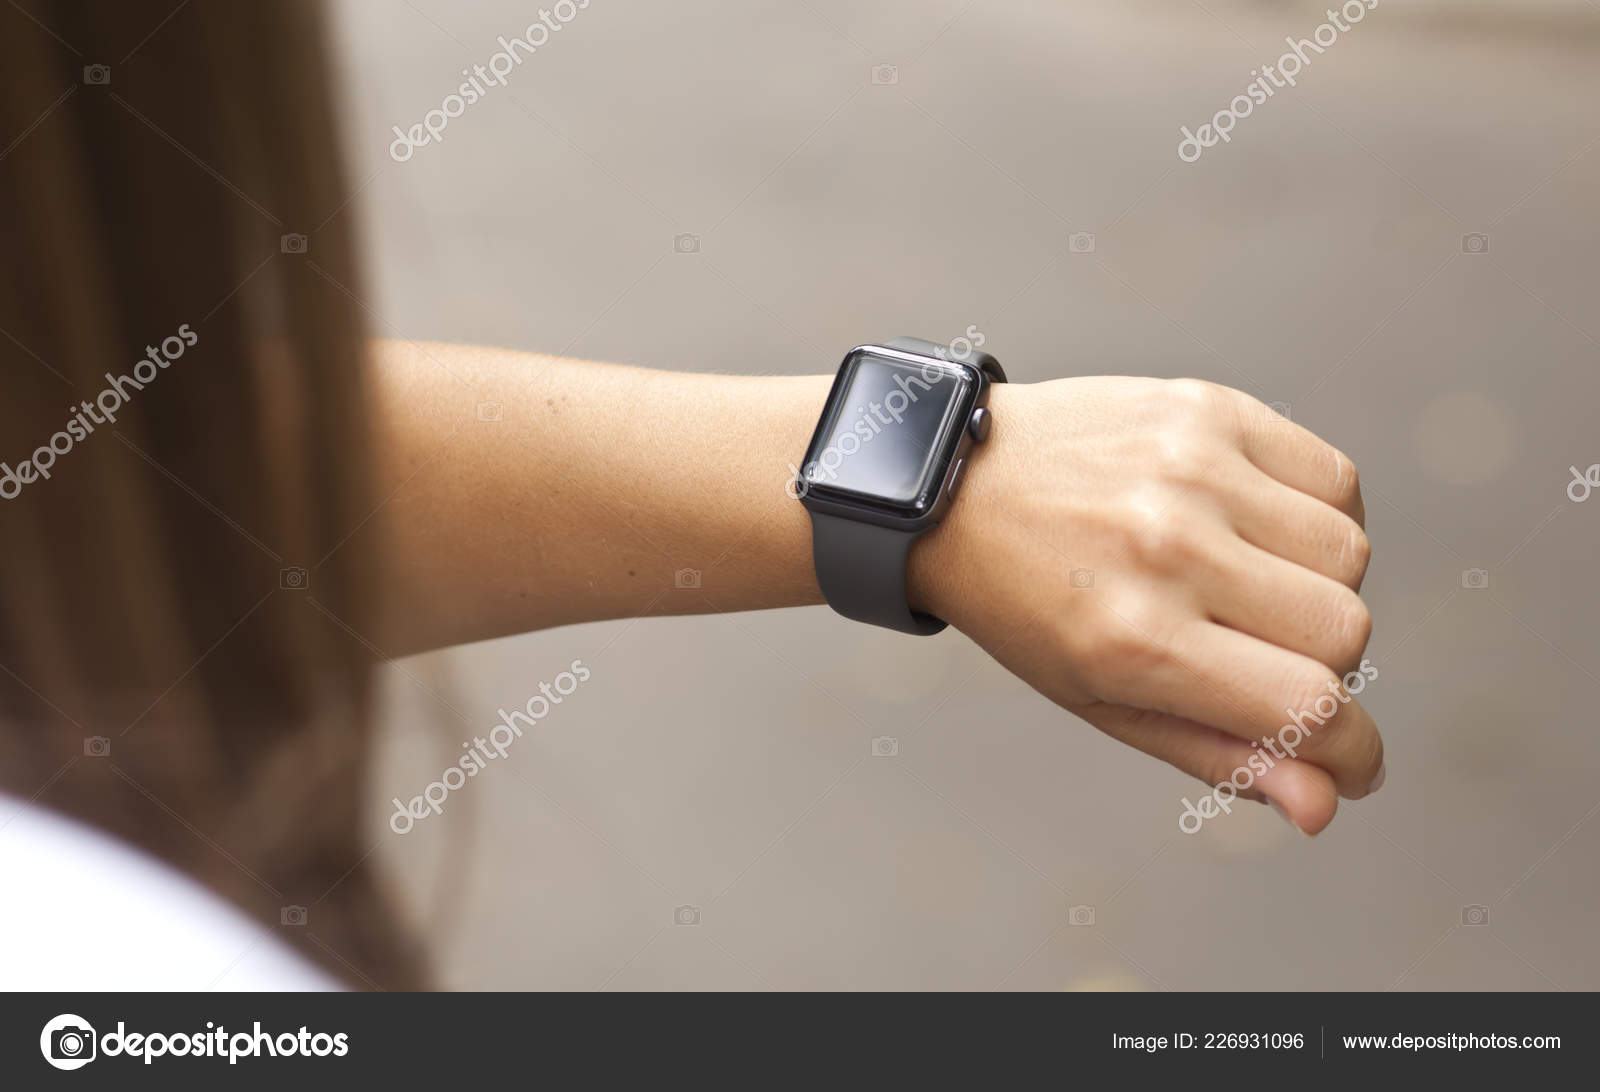 fjendtlighed forråde kun Smart Watch Woman's Hand Stock Photo by ©Olegkalina 226931096